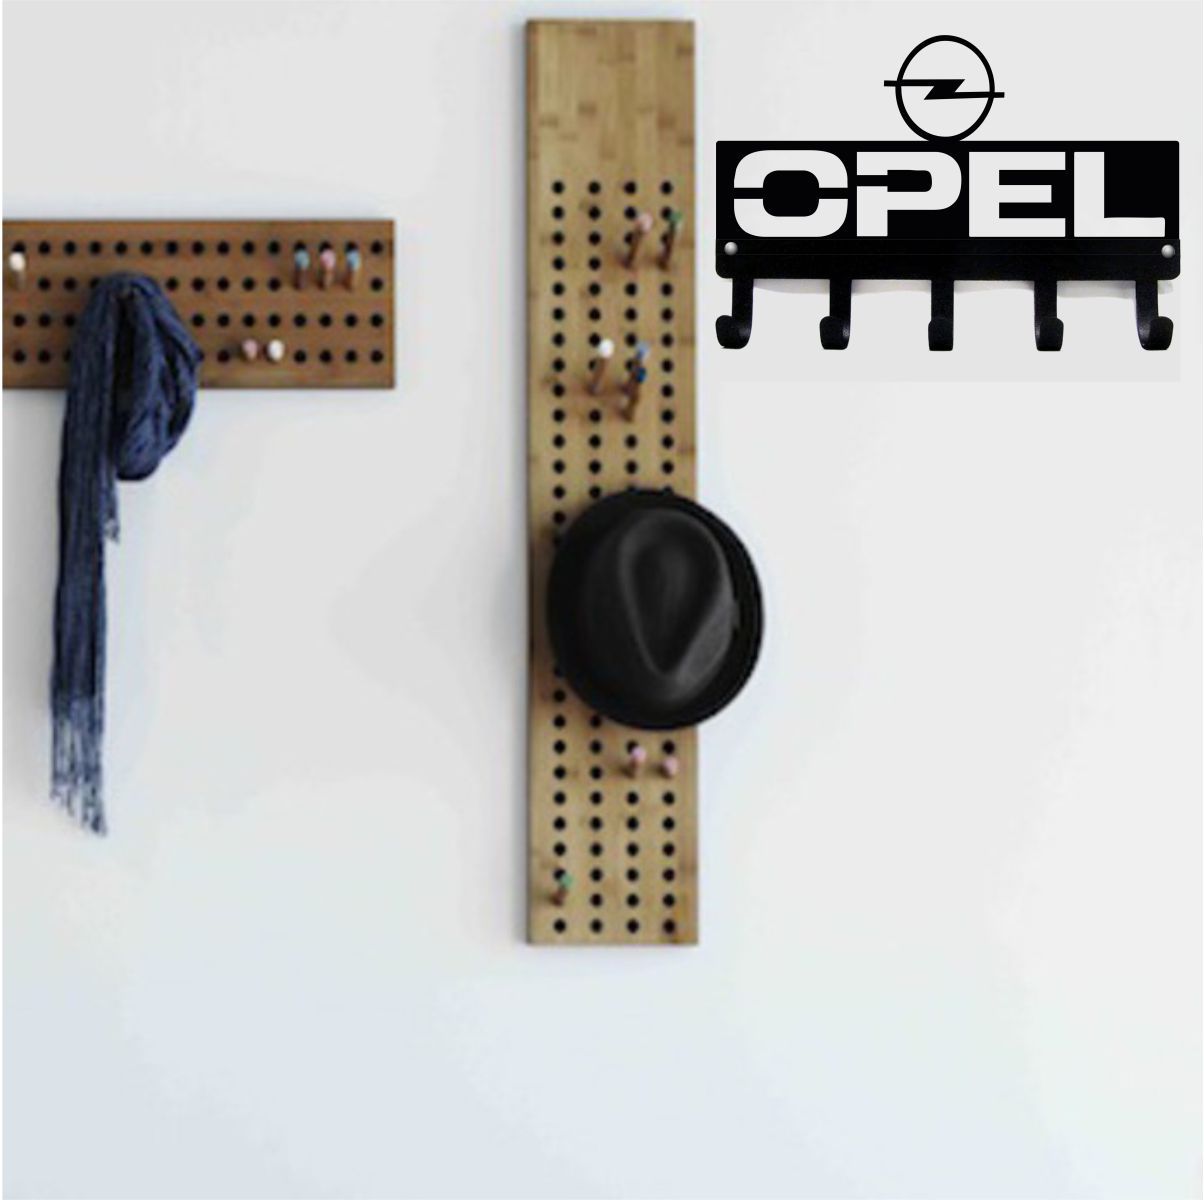 Opel Metal Anahtar Askılığı